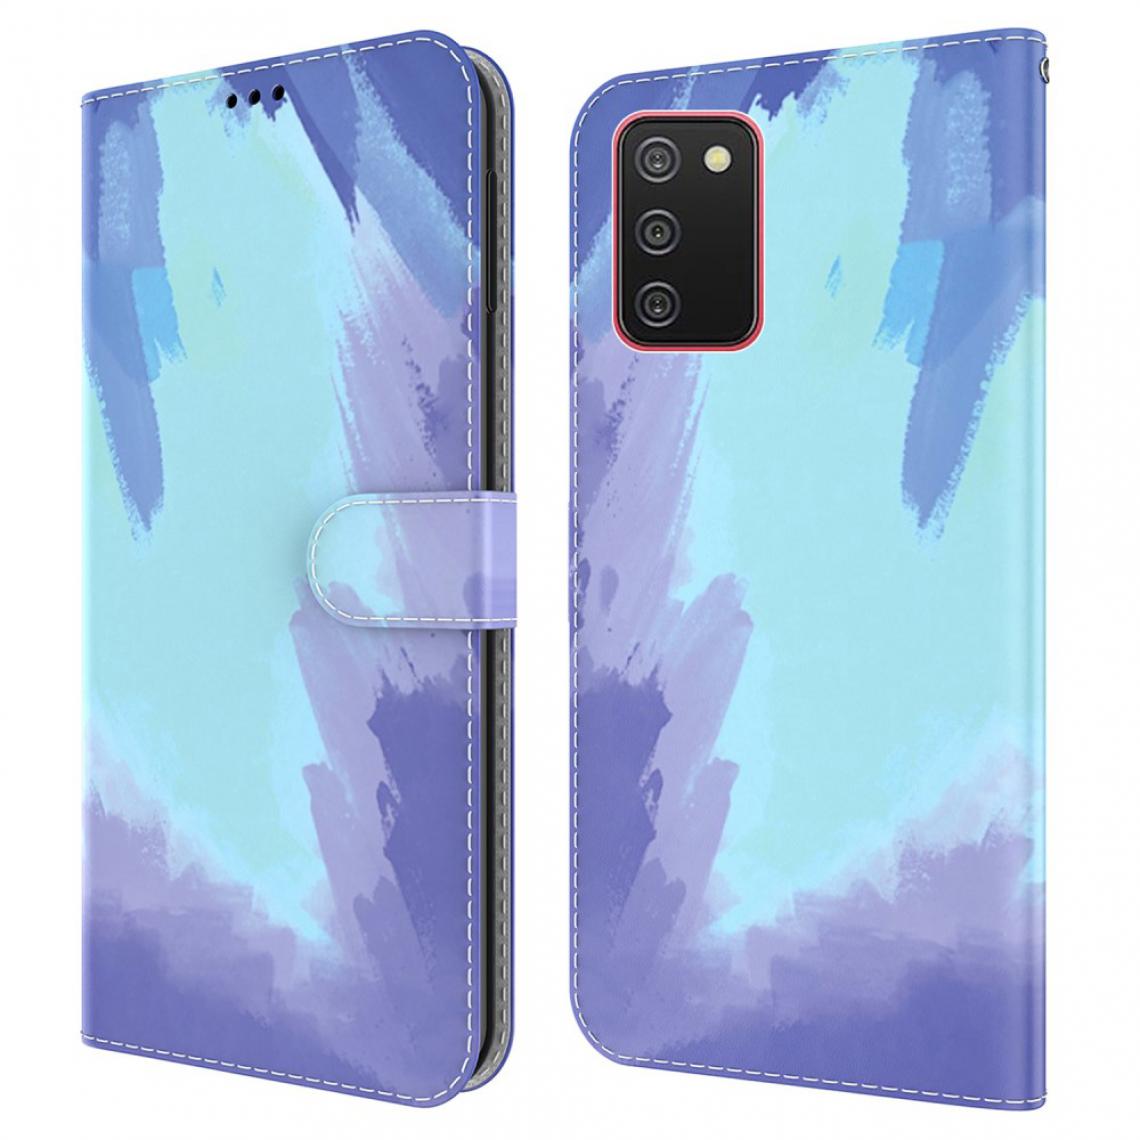 Other - Etui en PU Aquarelle élégante (164,2 x 75,9 x 9,1 mm) avec support Neige de l'hiver pour votre Samsung Galaxy A02s - Coque, étui smartphone